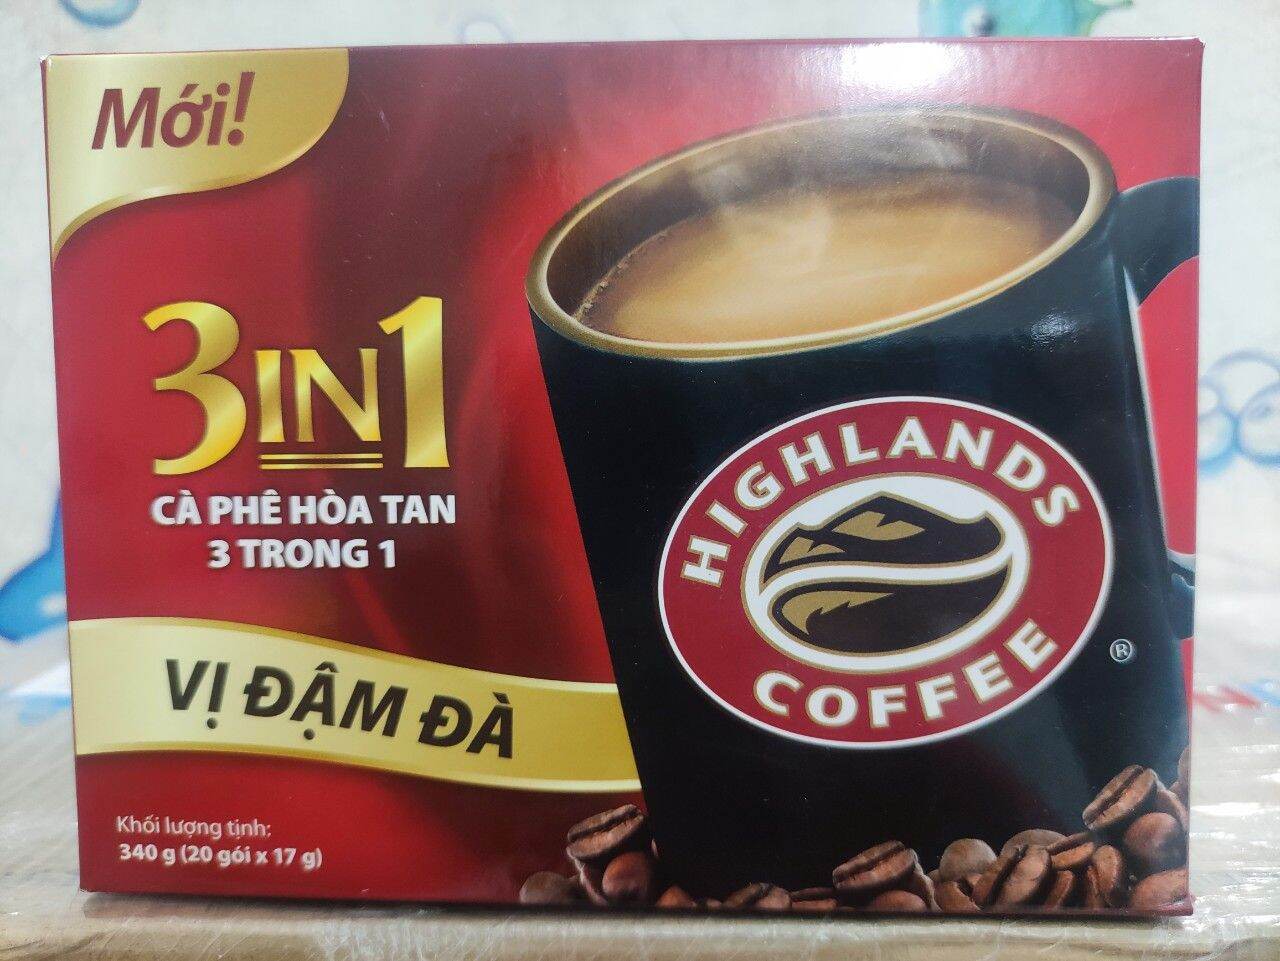 Cà phê Highlands coffee 3in1 hộp 20gói 10 gói